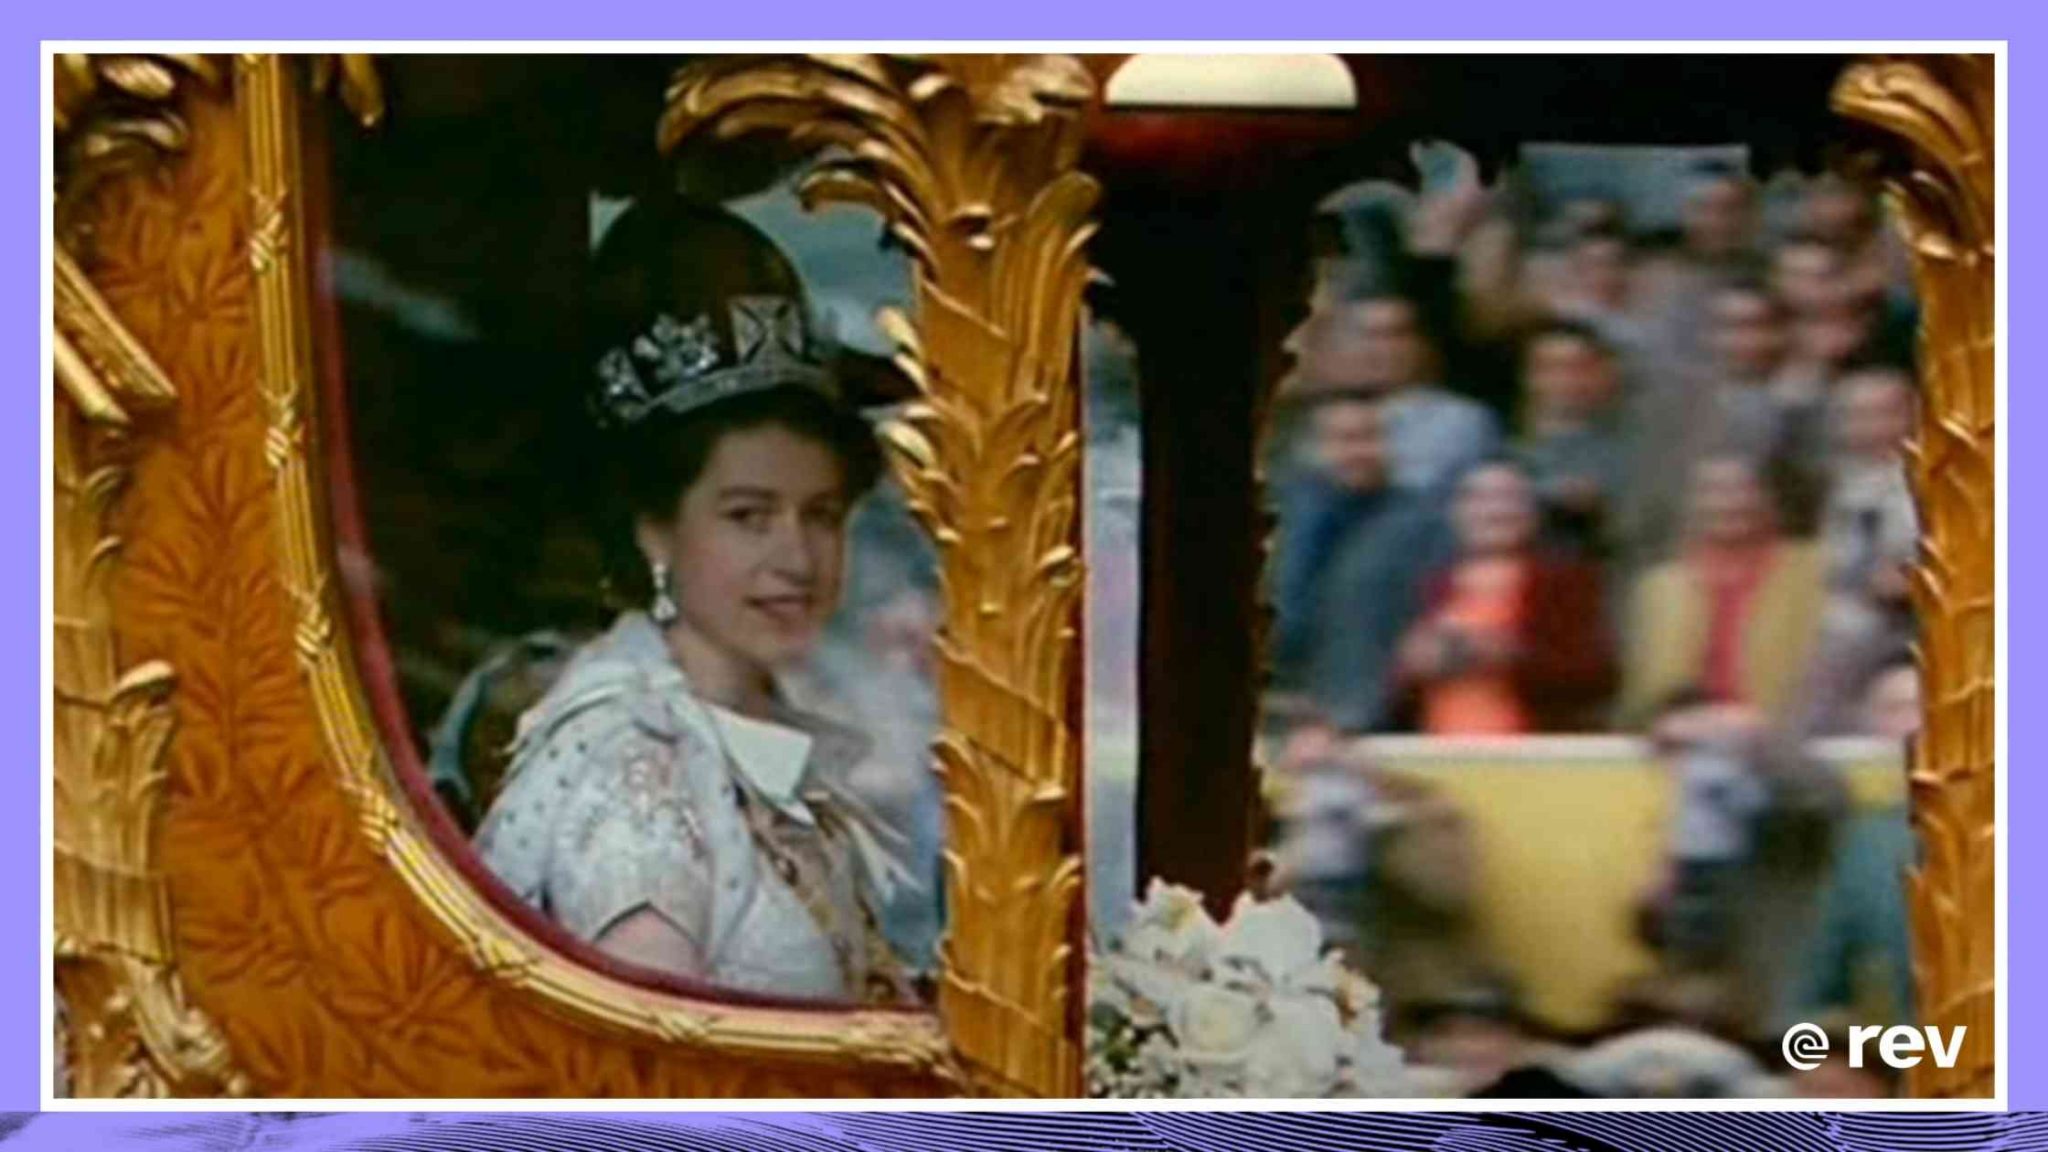 The Queen's Coronation Day Speech June 2nd, 1953 Transcript